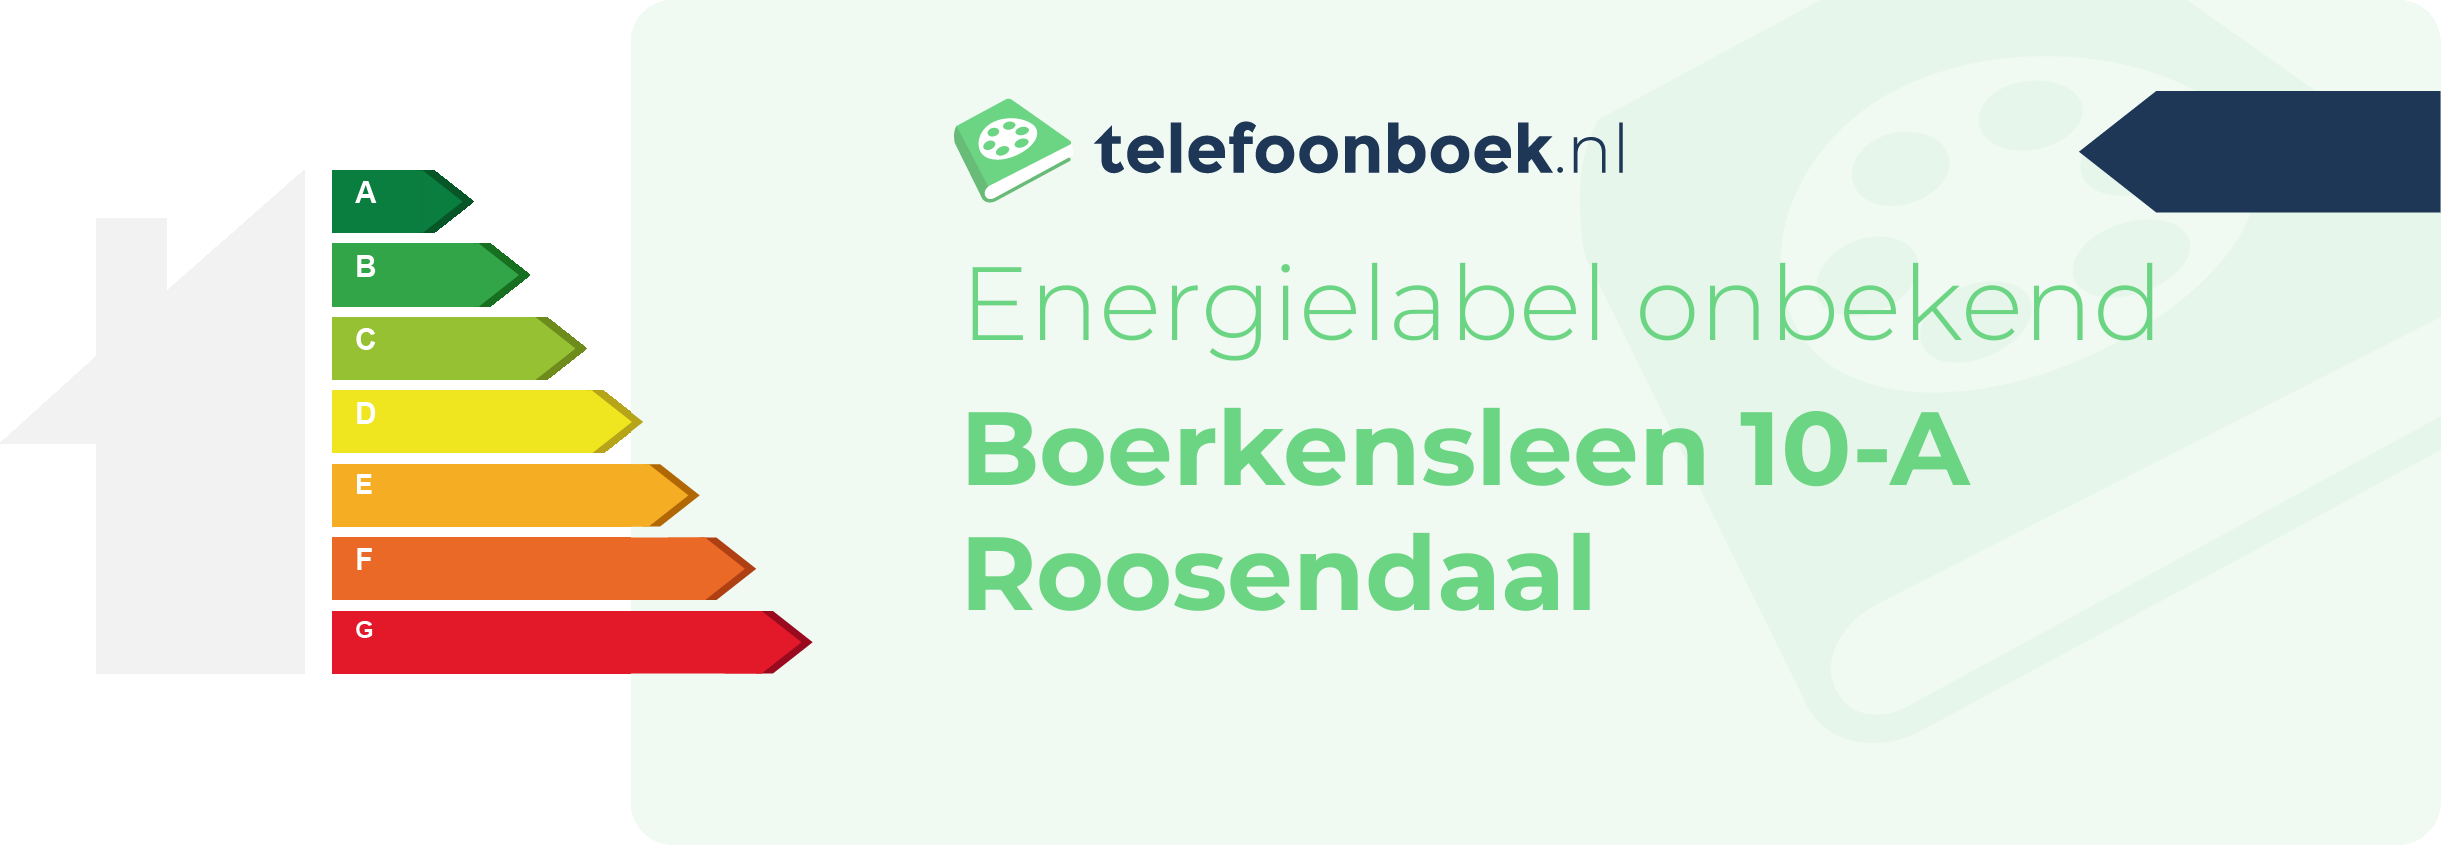 Energielabel Boerkensleen 10-A Roosendaal